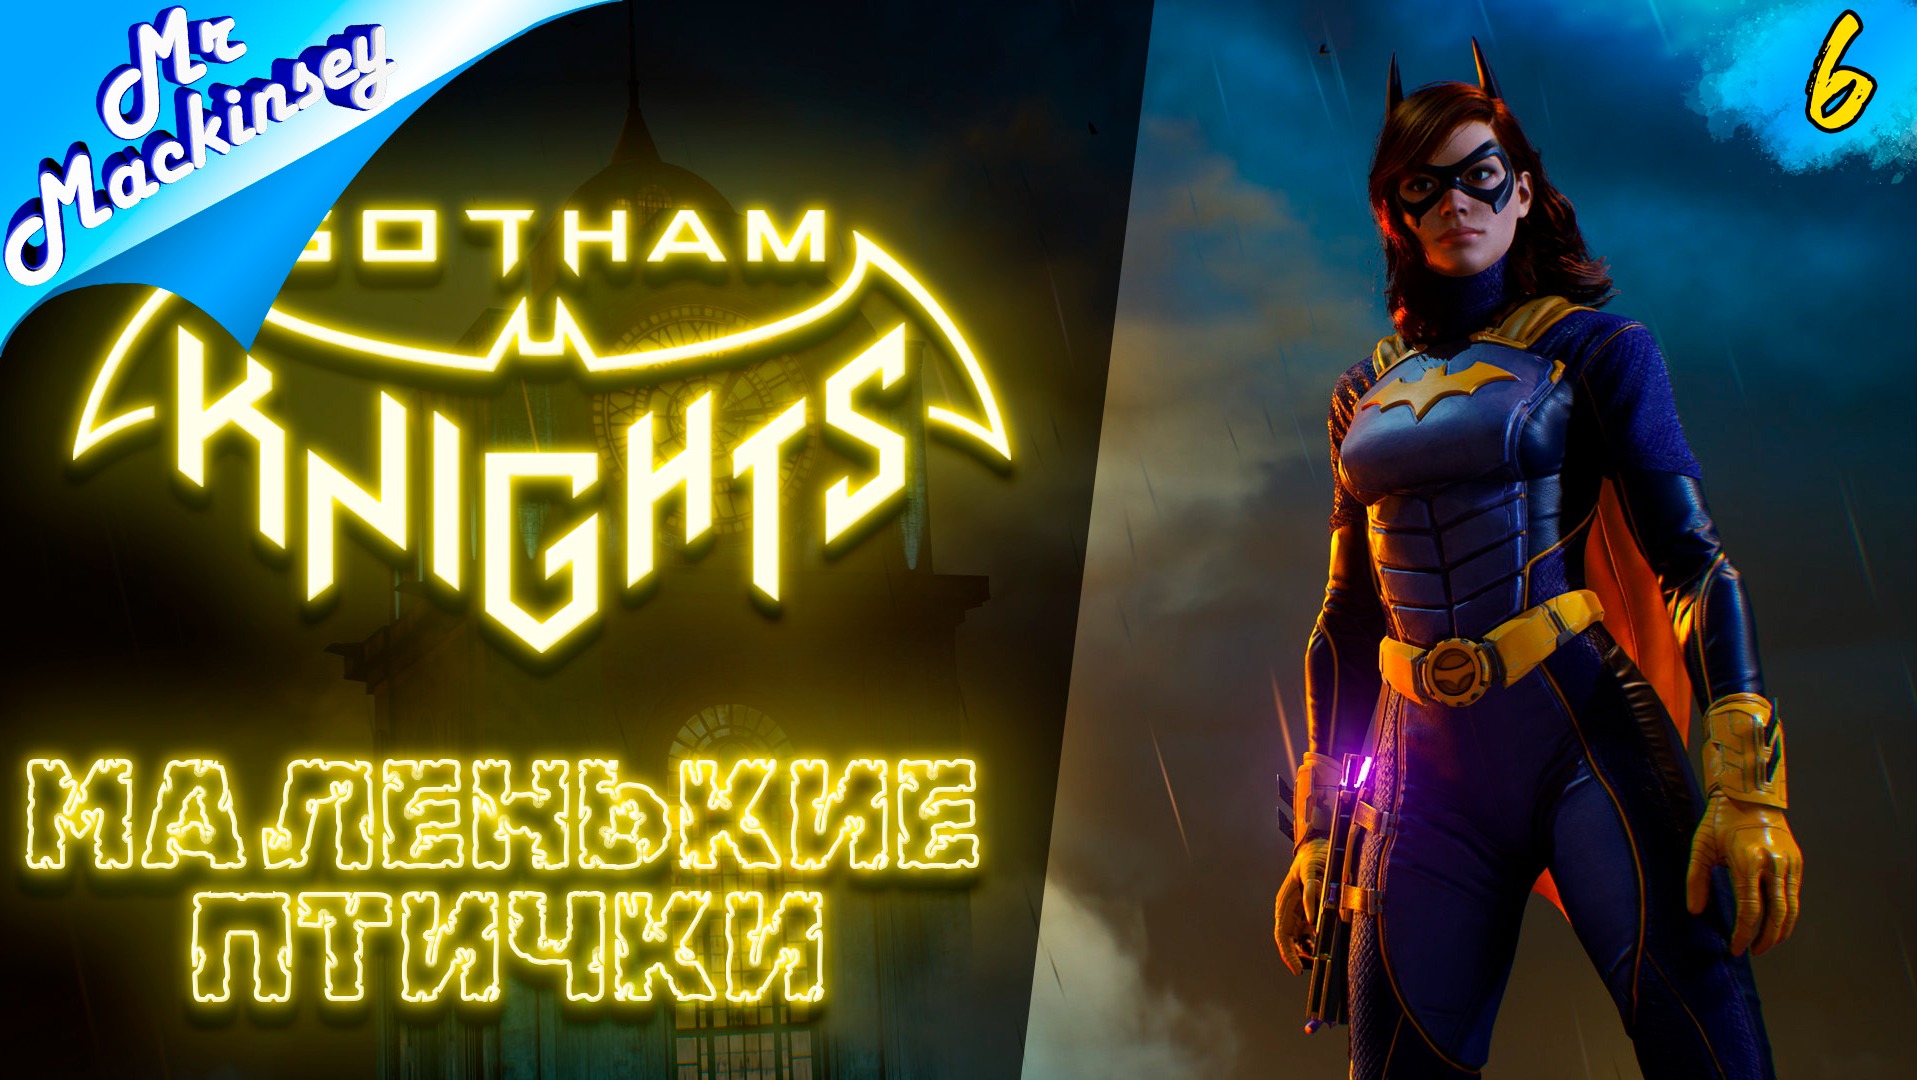 Это финал преступлений, я надеюсь | Gotham Knights ➤ Прохождение #6